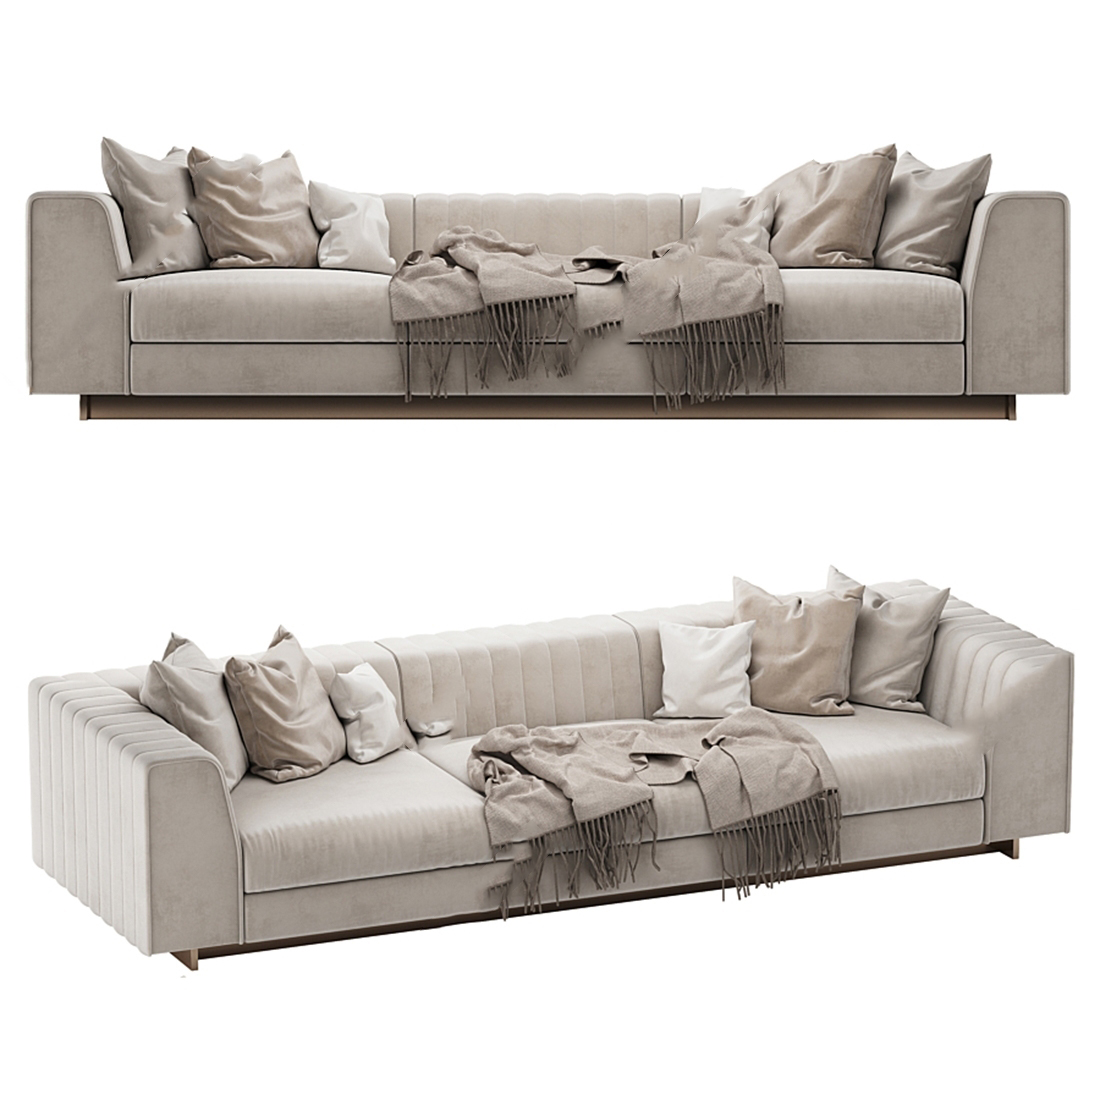 现代沙发模型ID000043